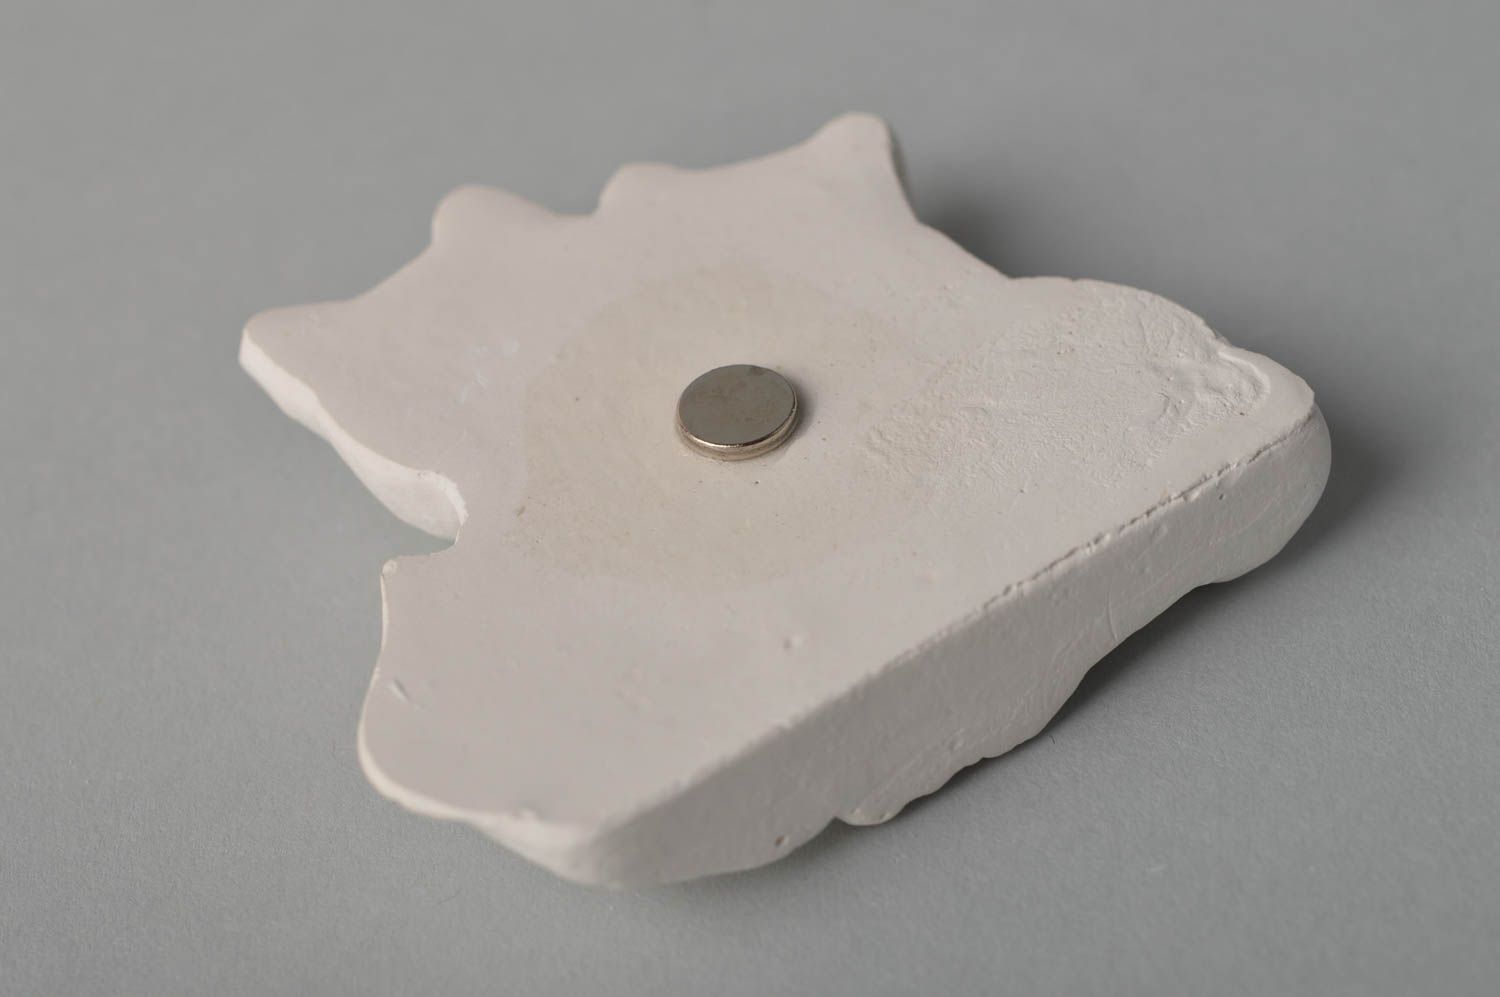 Handmade figurine designer magnet for fridge blank for creativity gift ideas photo 4